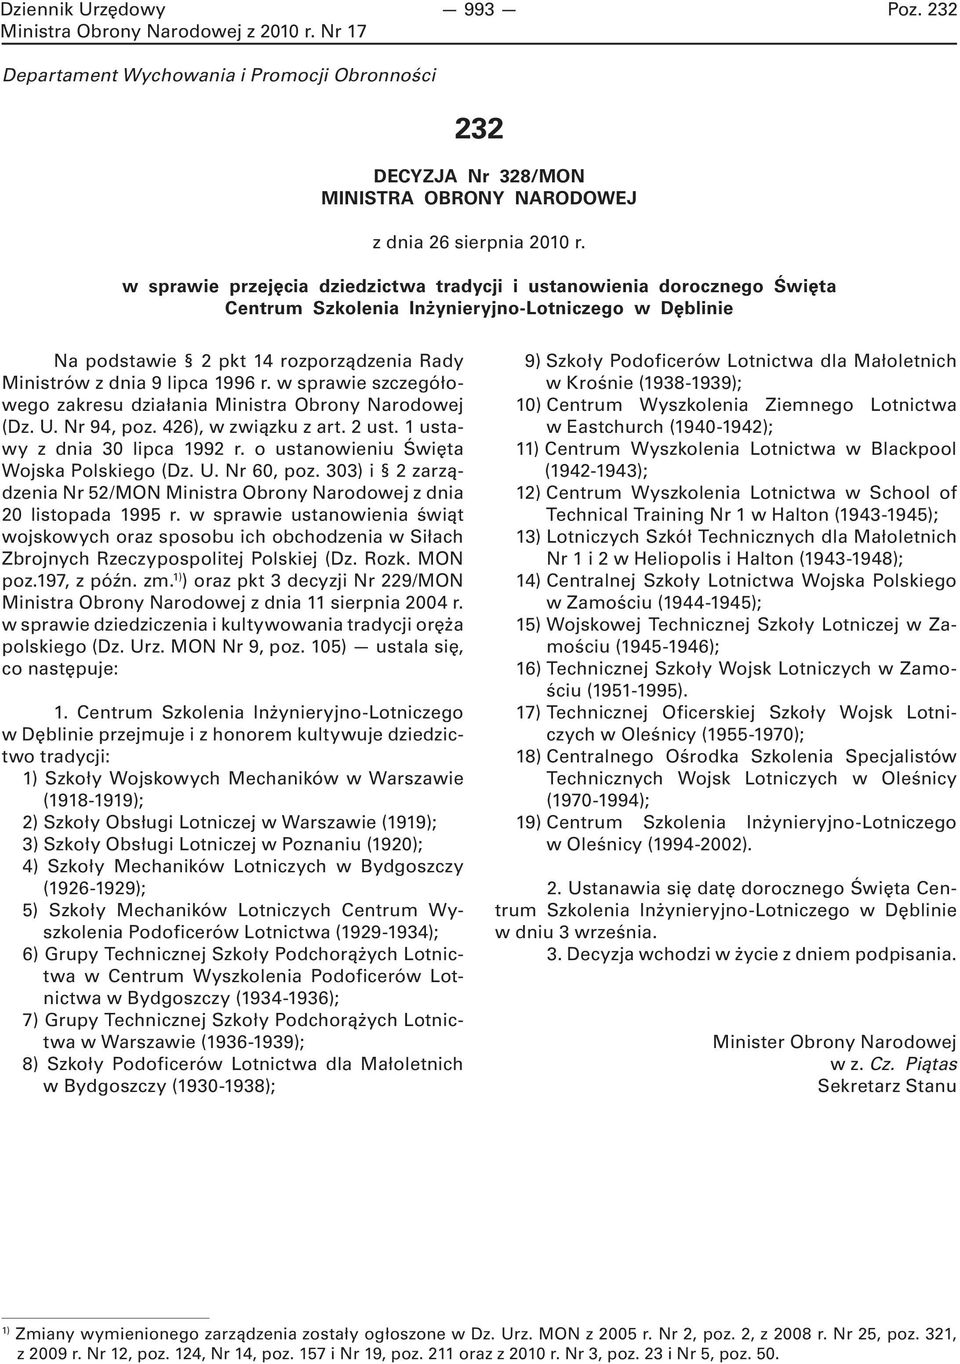 r. w sprawie szczegółowego zakresu działania Ministra Obrony Narodowej (Dz. U. Nr 94, poz. 426), w związku z art. 2 ust. 1 ustawy z dnia 30 lipca 1992 r. o ustanowieniu Święta Wojska Polskiego (Dz. U. Nr 60, poz.